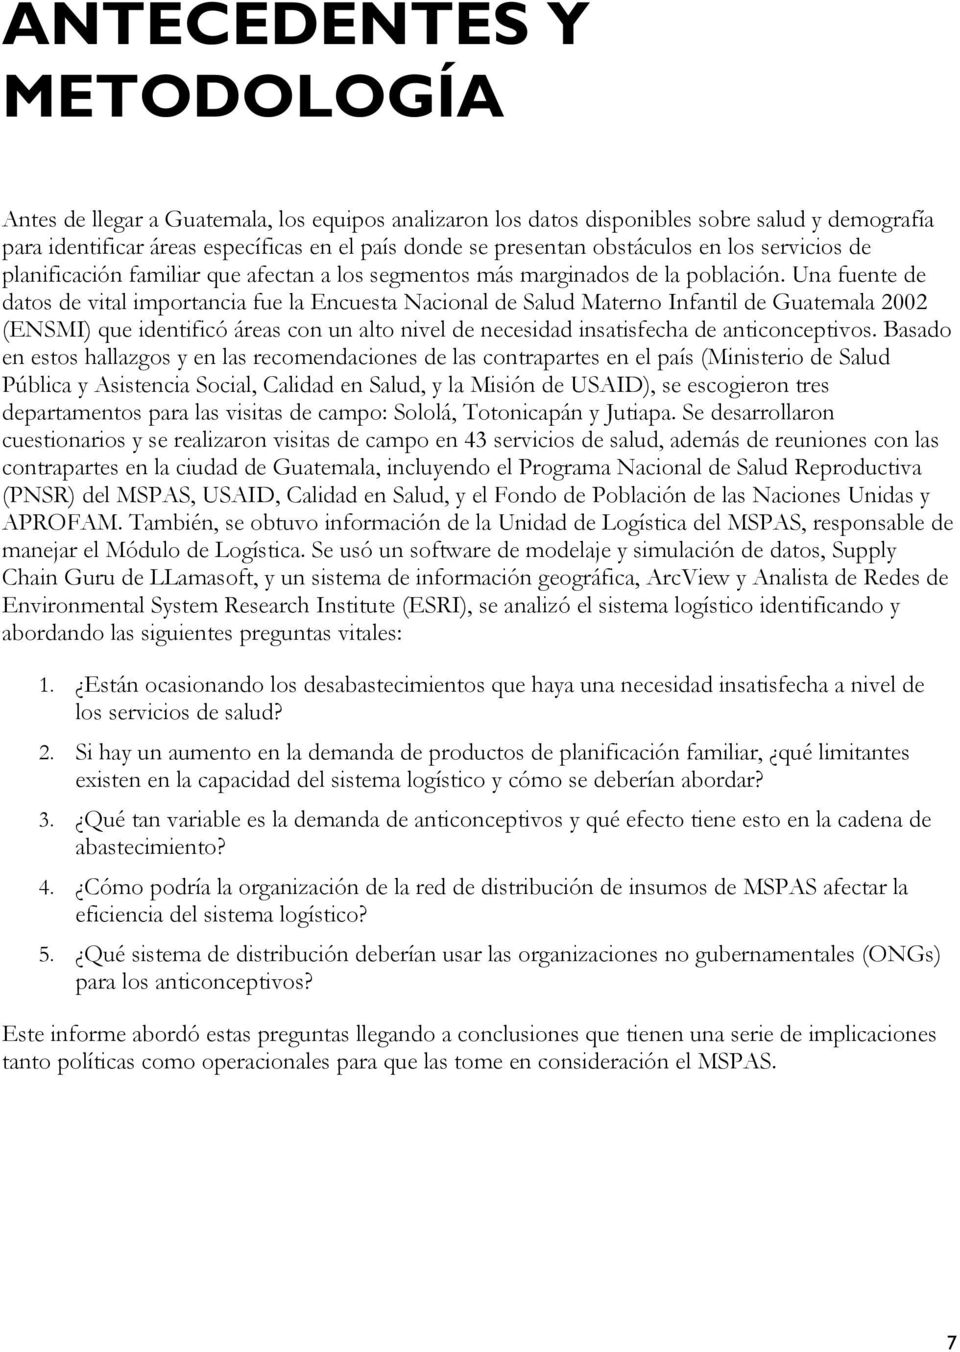 Una fuente de datos de vital importancia fue la Encuesta Nacional de Salud Materno Infantil de Guatemala 2002 (ENSMI) que identificó áreas con un alto nivel de necesidad insatisfecha de